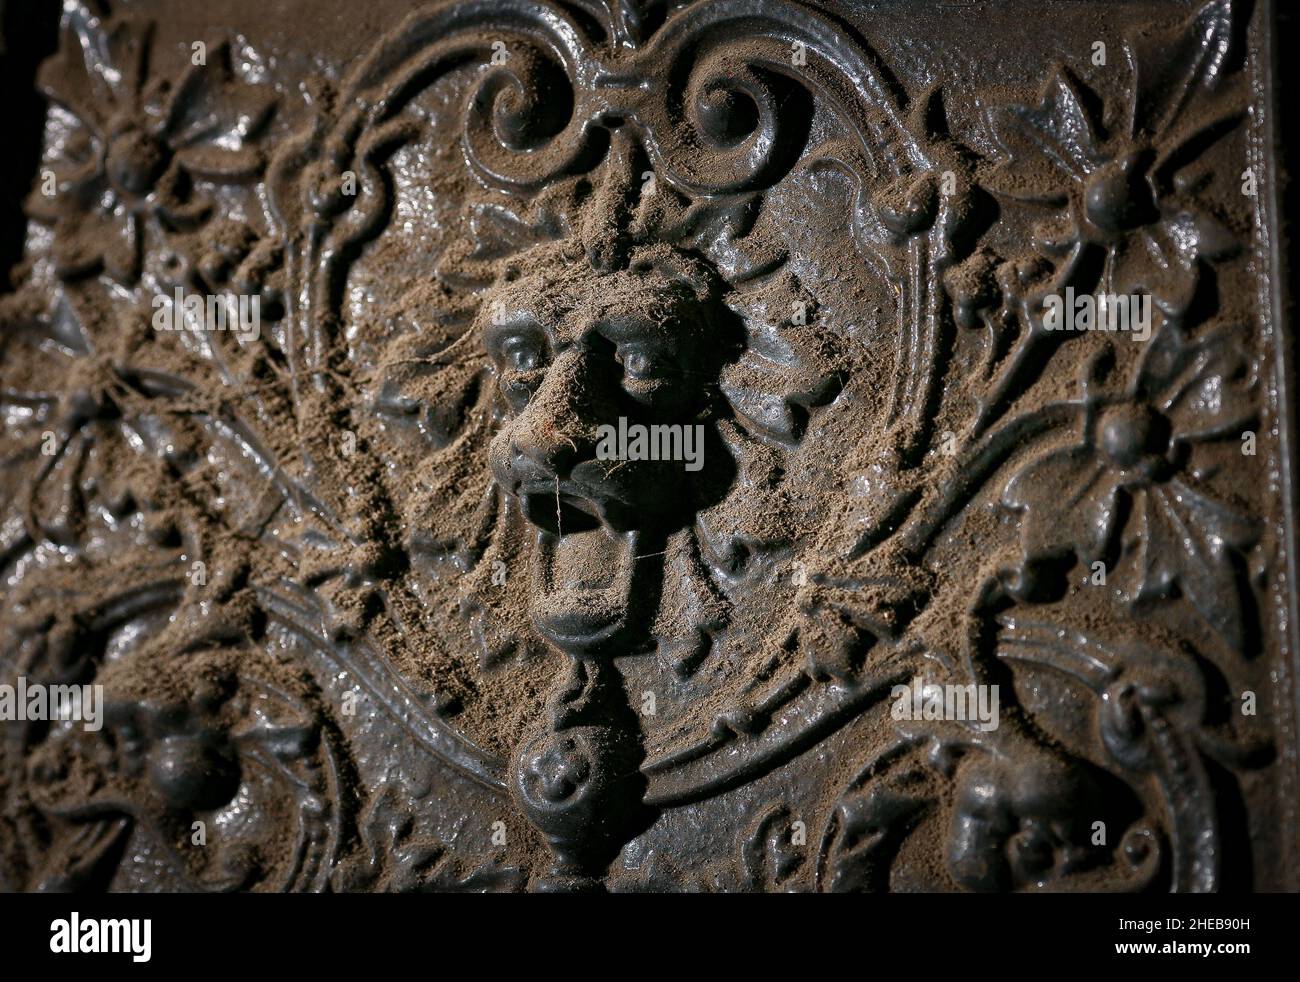 Ein dekorativer, dekorativer Löwenkopf mit ansetzenden Augen steht vor Beginn der Renovierungsarbeiten an einem antiken gusseisernen Kamin in einem alten Haus. Stockfoto